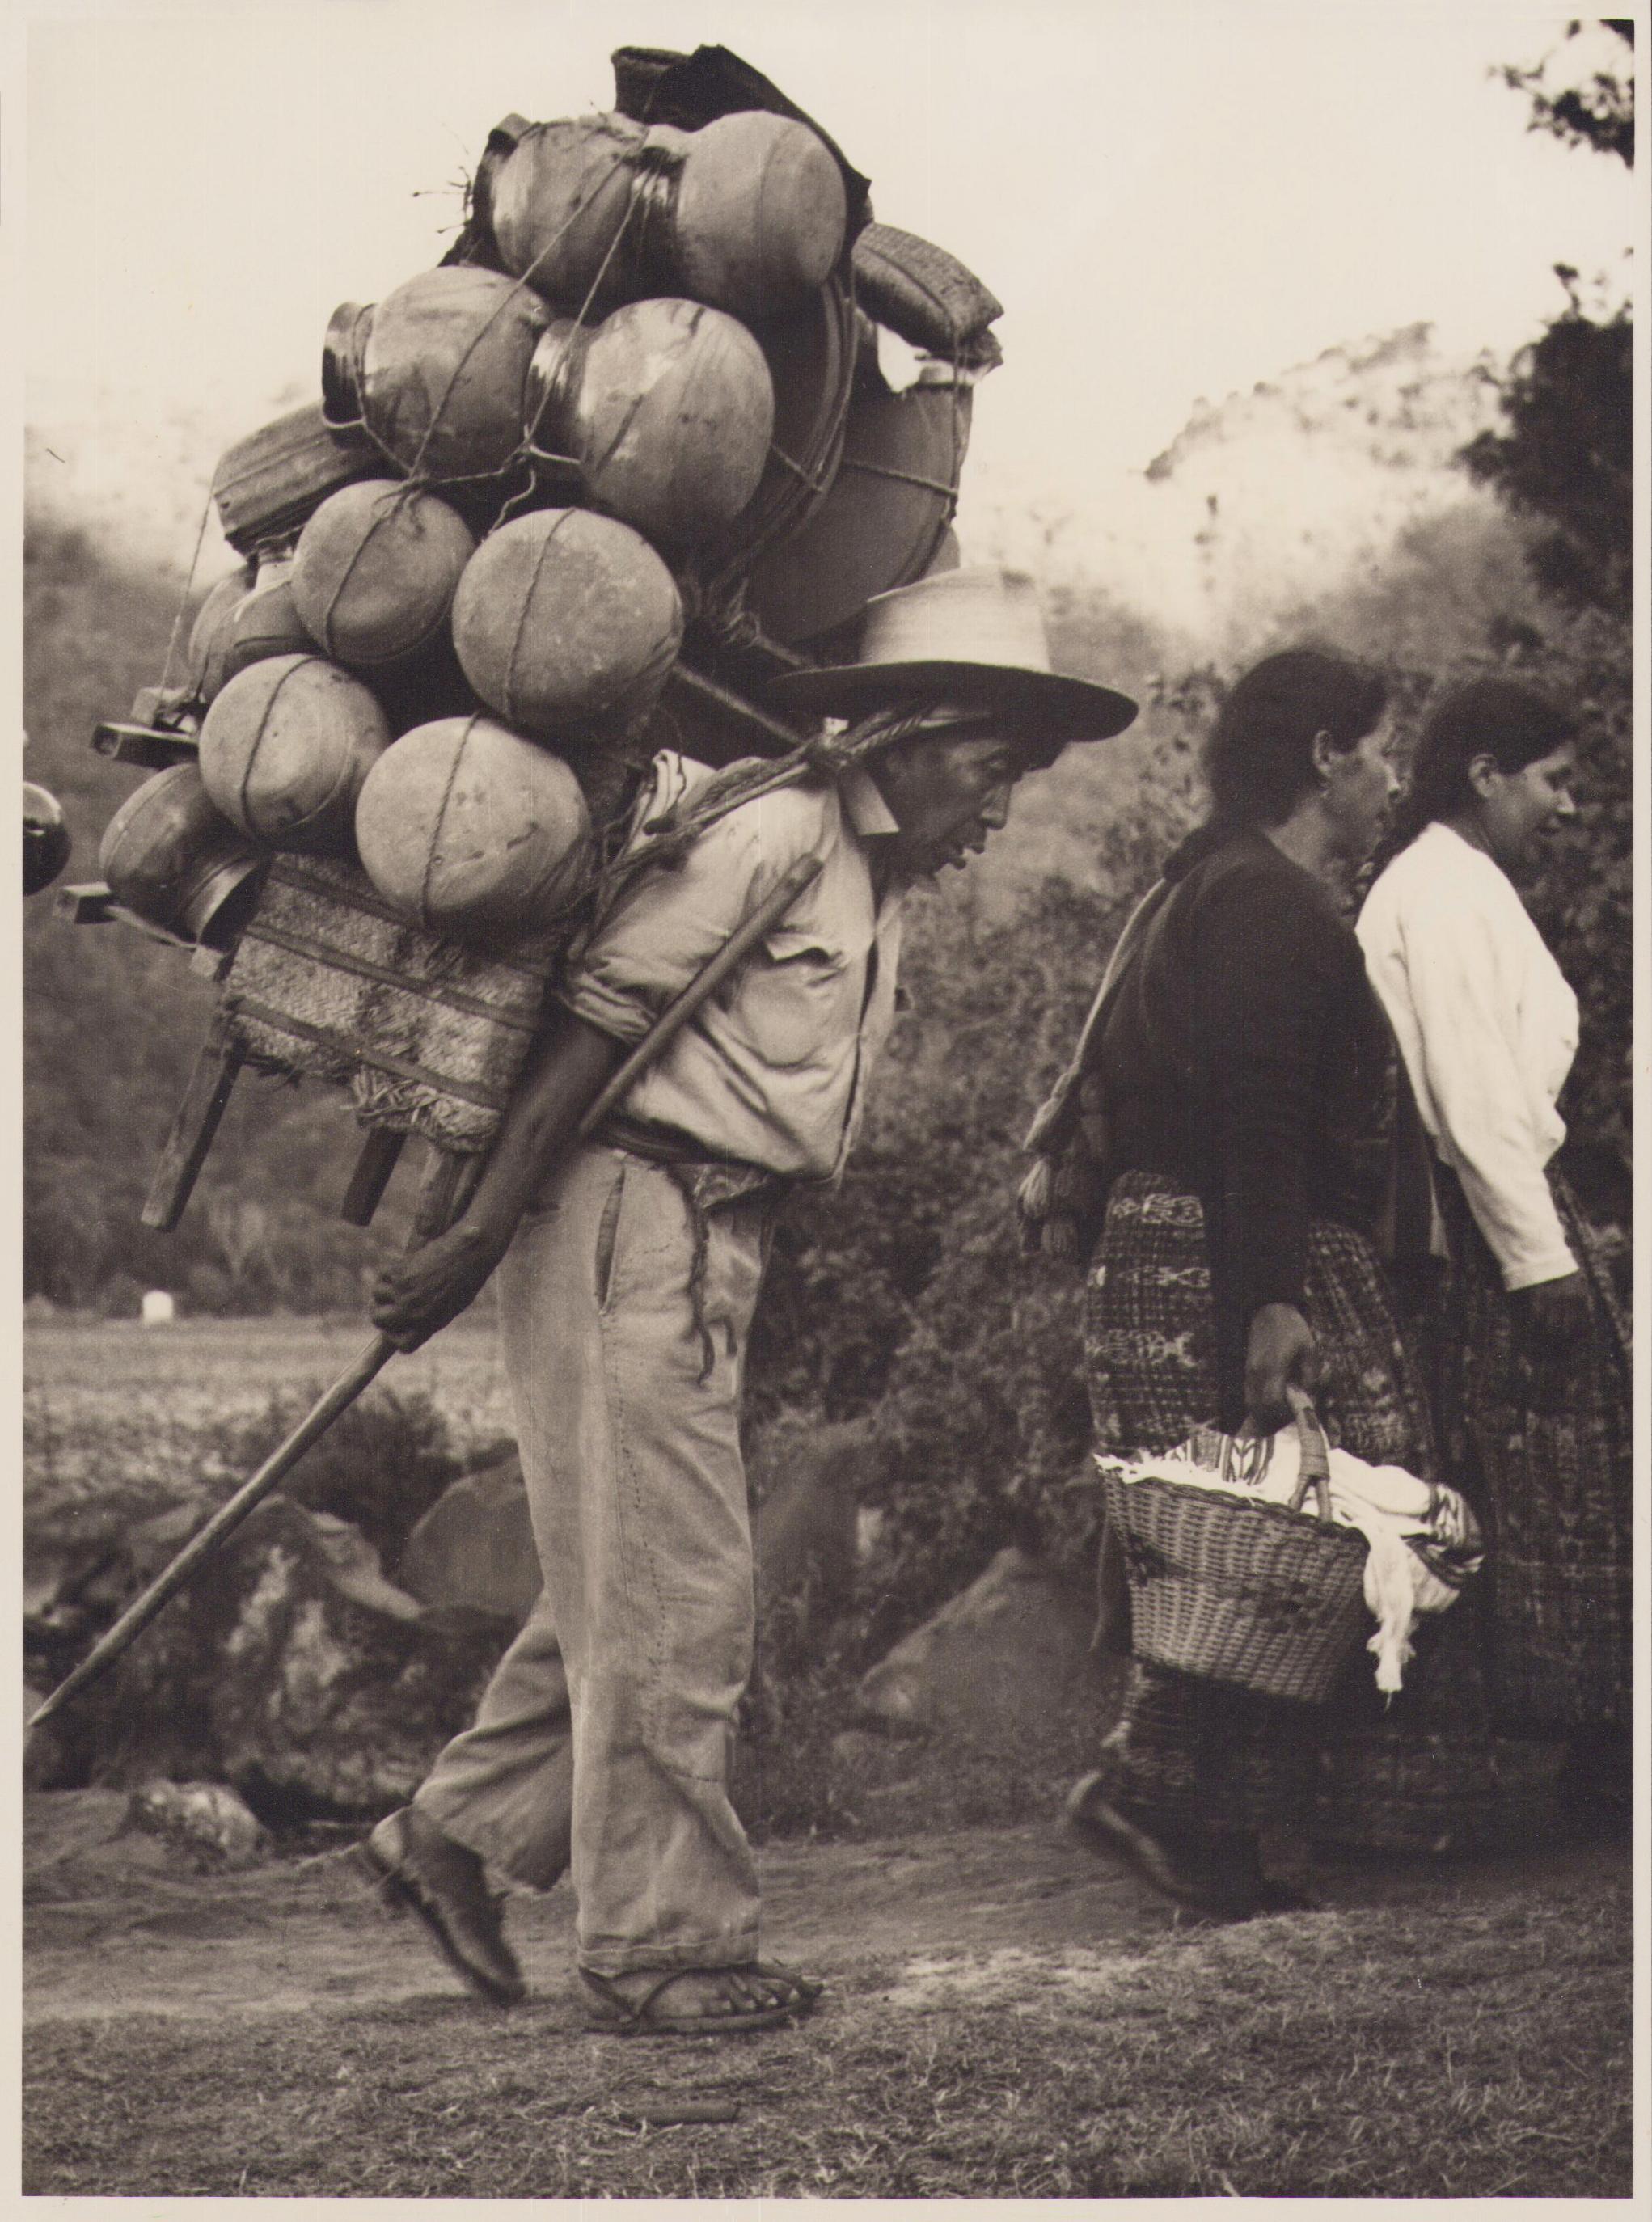 Guatemala, Mann, Schwarz-Weiß-Fotografie, ca. 1960er Jahre, 25,3 x 24,2 cm